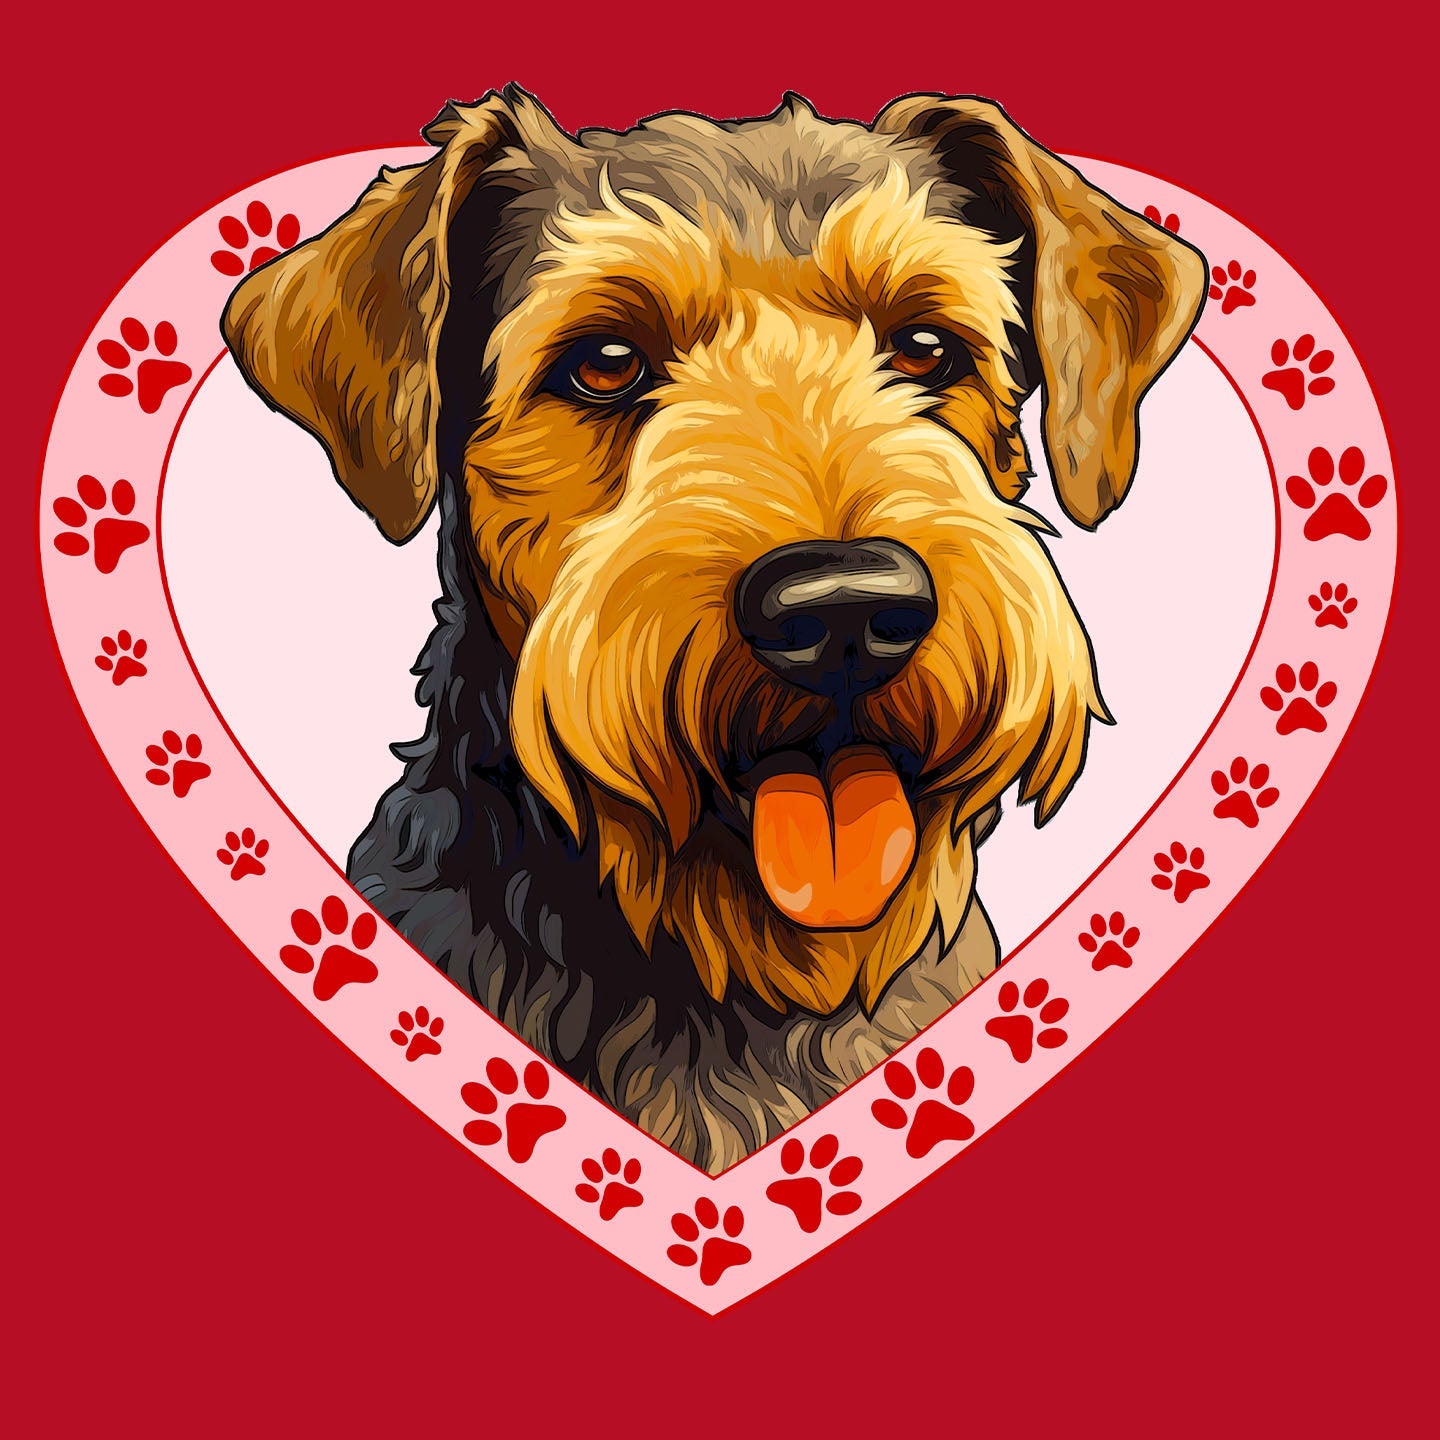 Welsh Terrier Illustration In Heart - Women's V-Neck T-Shirt